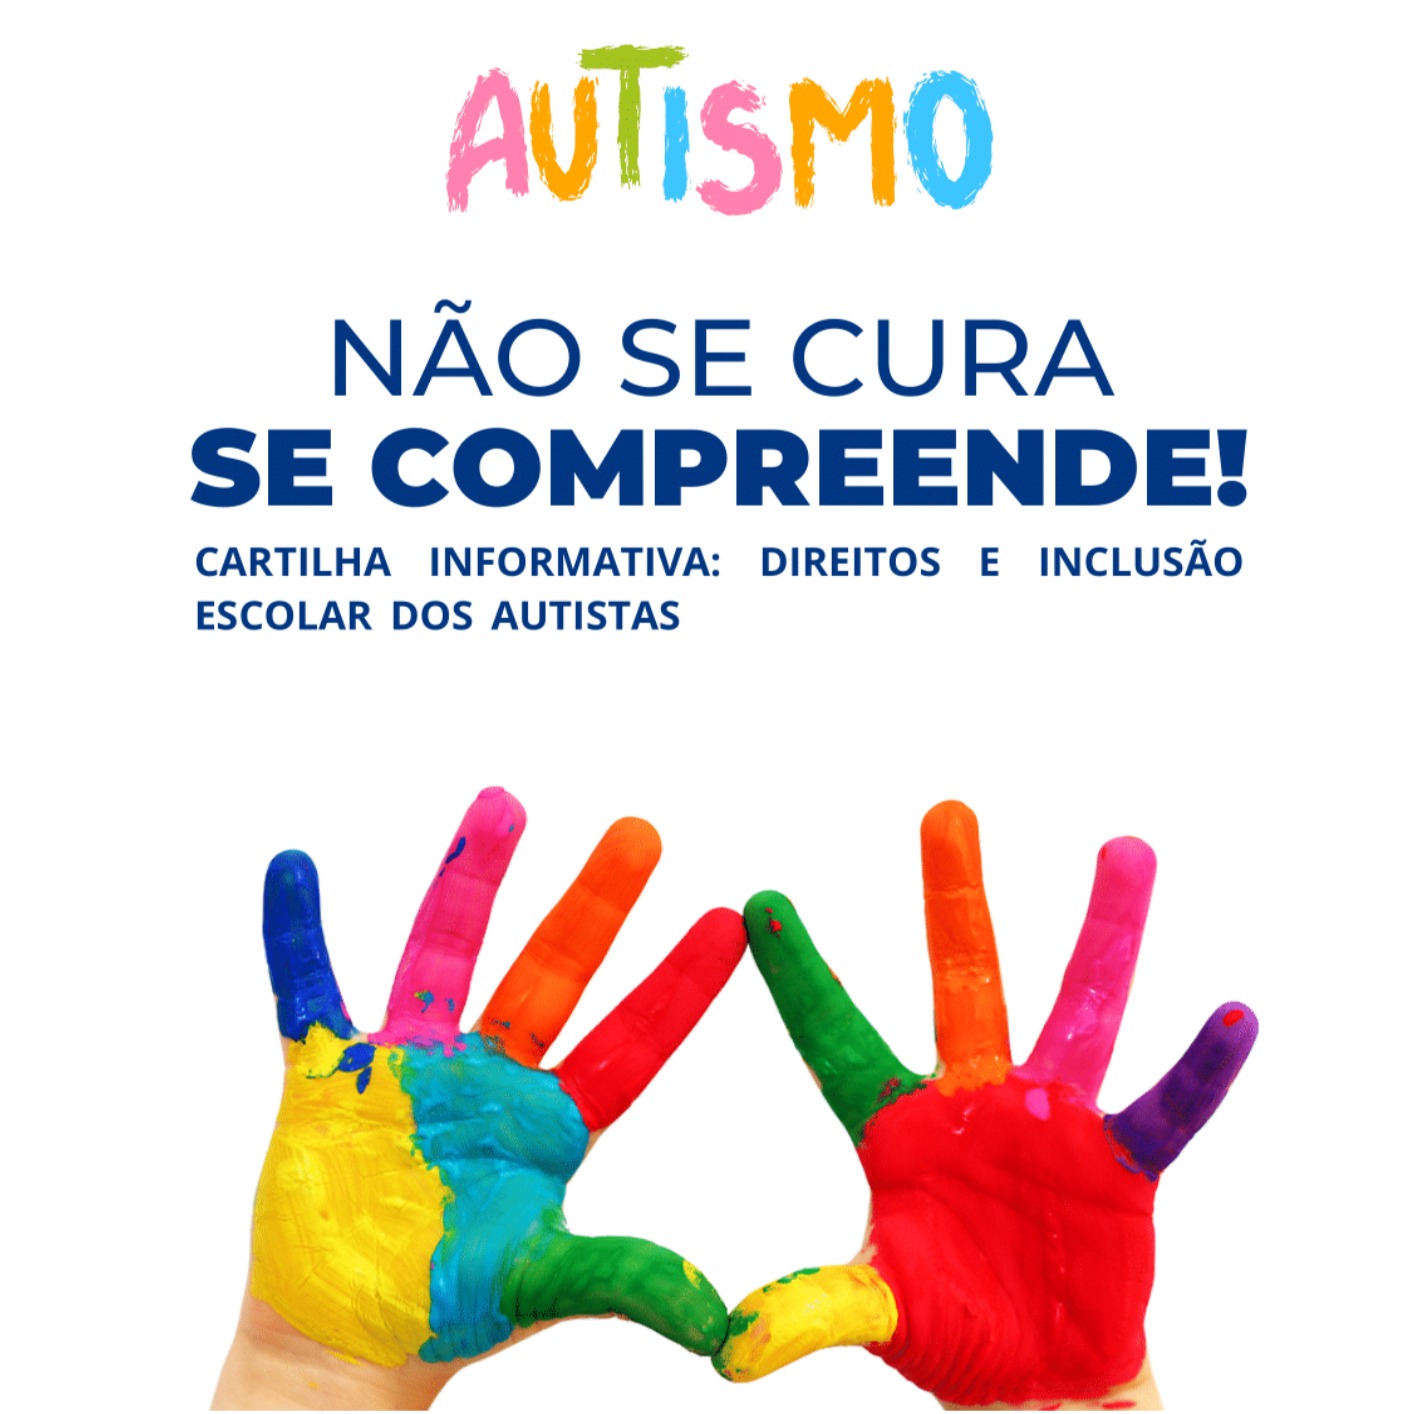 Procon Sarandi lança cartilha de conscientização sobre direitos e leis de inclusão de autistas